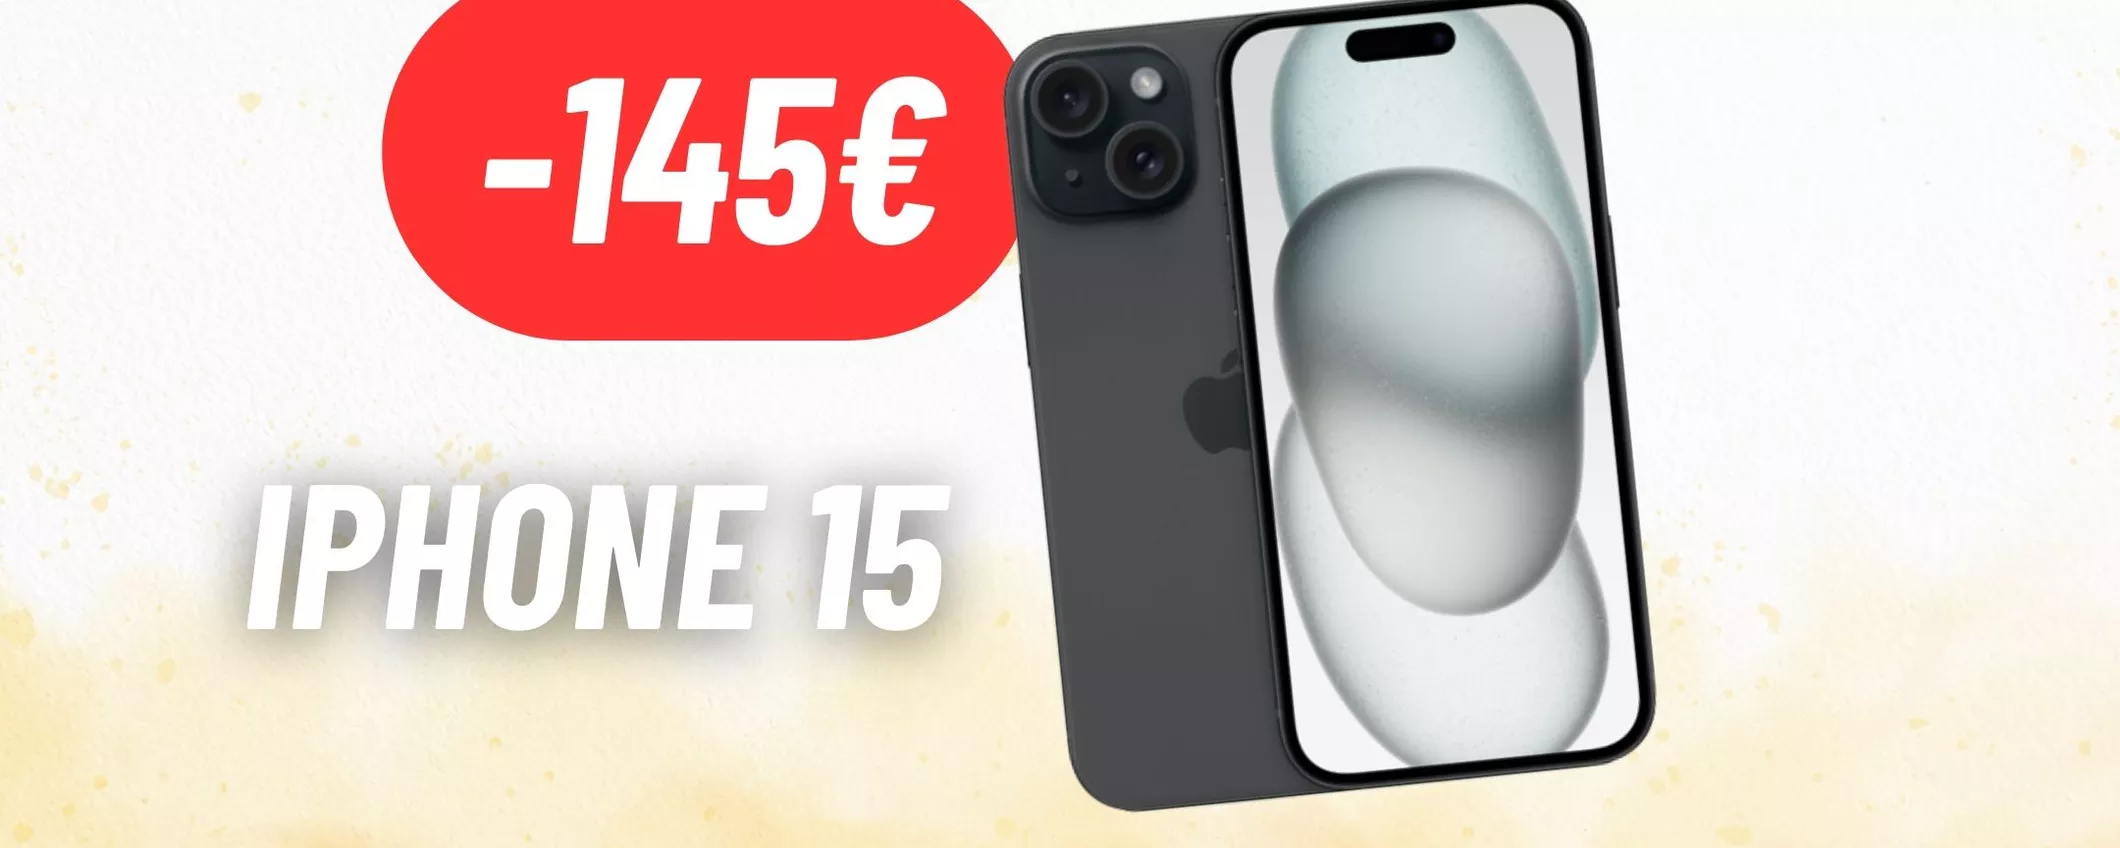 RISPARMIA 145€ sull'acquisto di iPhone 15: doppia promo su eBay